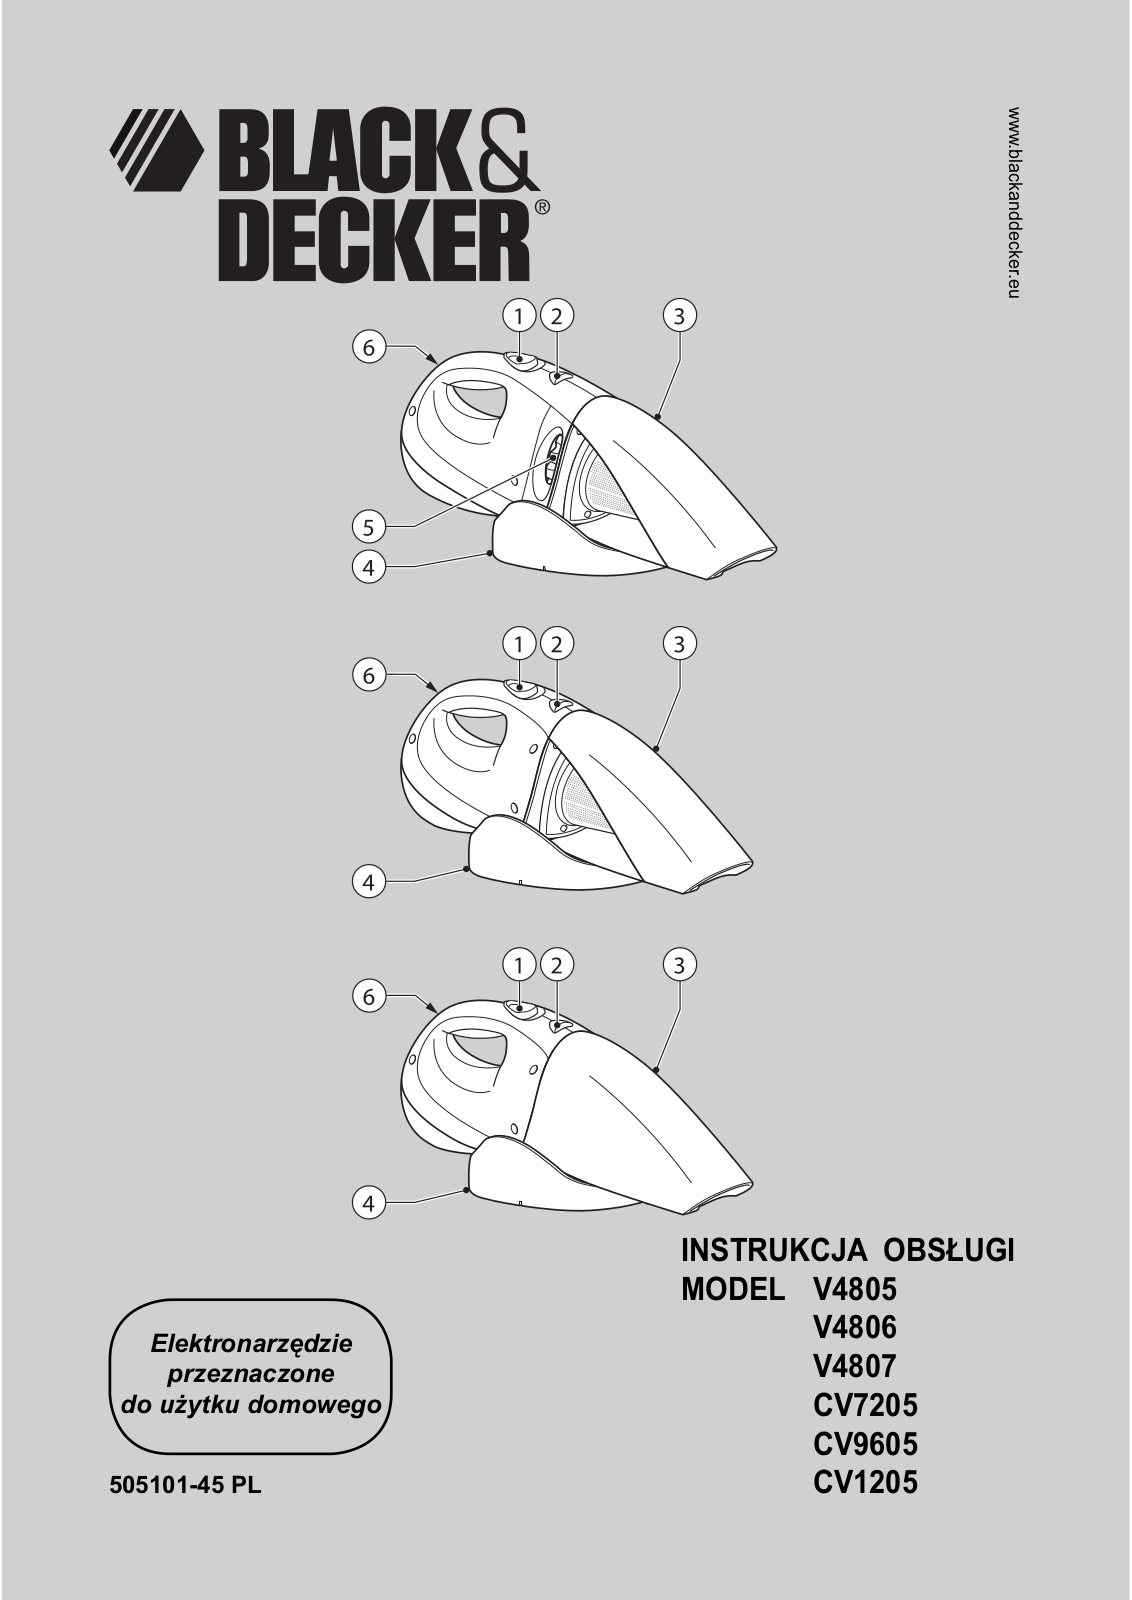 Black & Decker Cv9605, Cv9605t, Cv9605g, Cv7205t, V4807 Instruction Manual